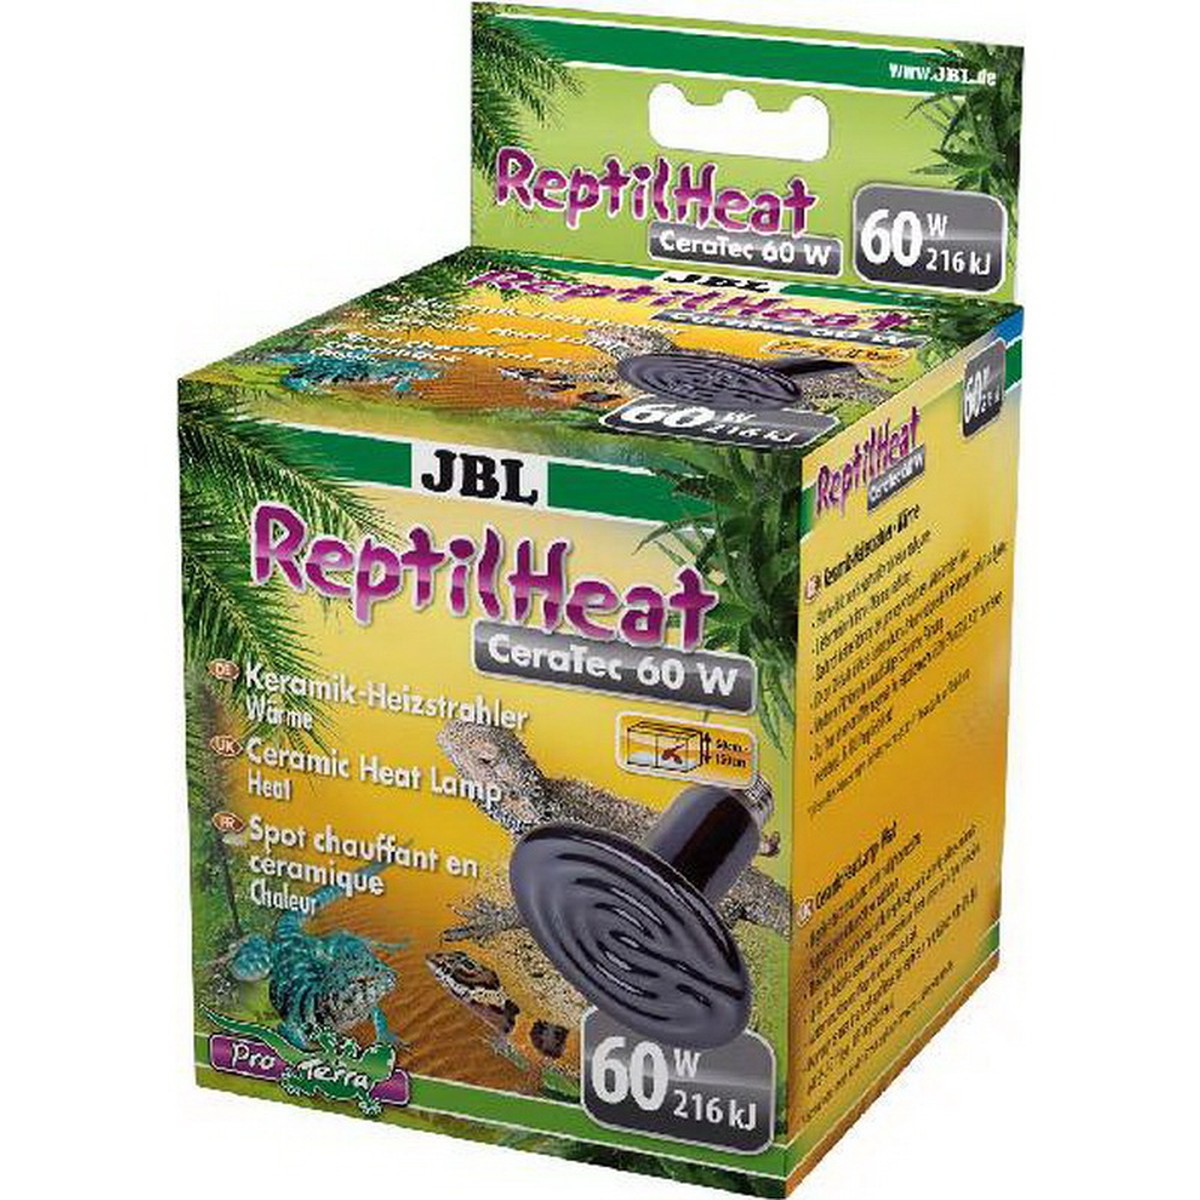   JBL ReptilHeat 60 W  60w